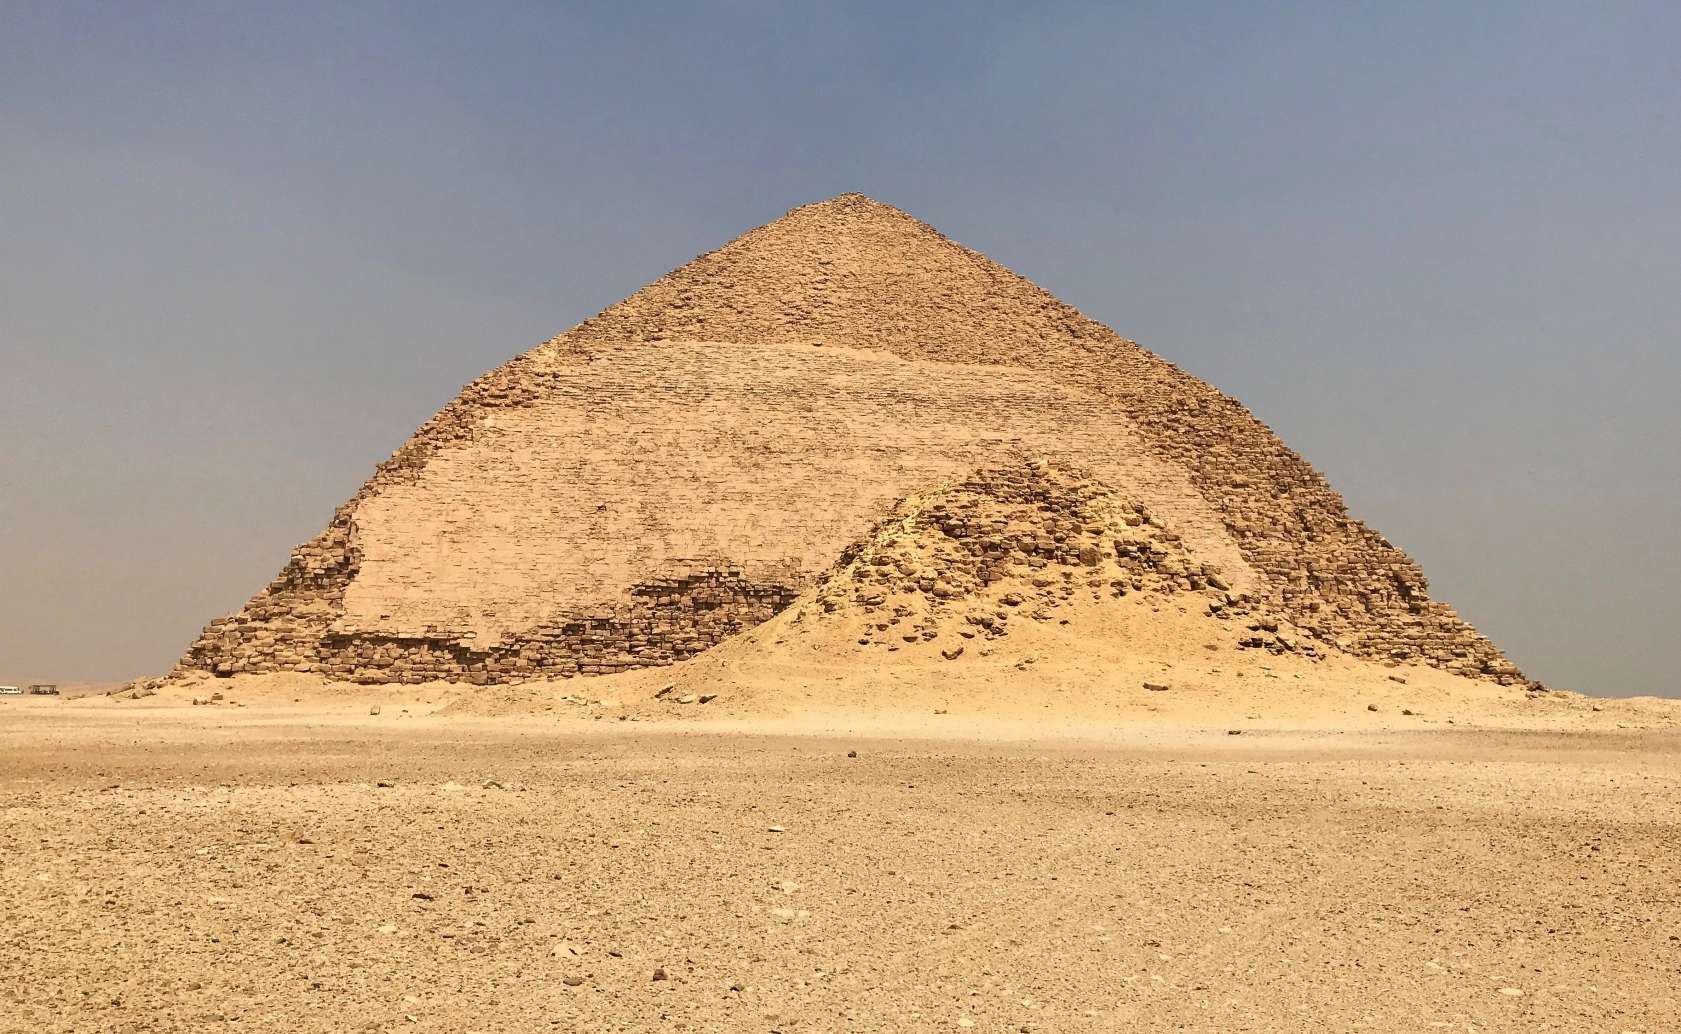 曲がったピラミッド、ダハシュール、エジプト。